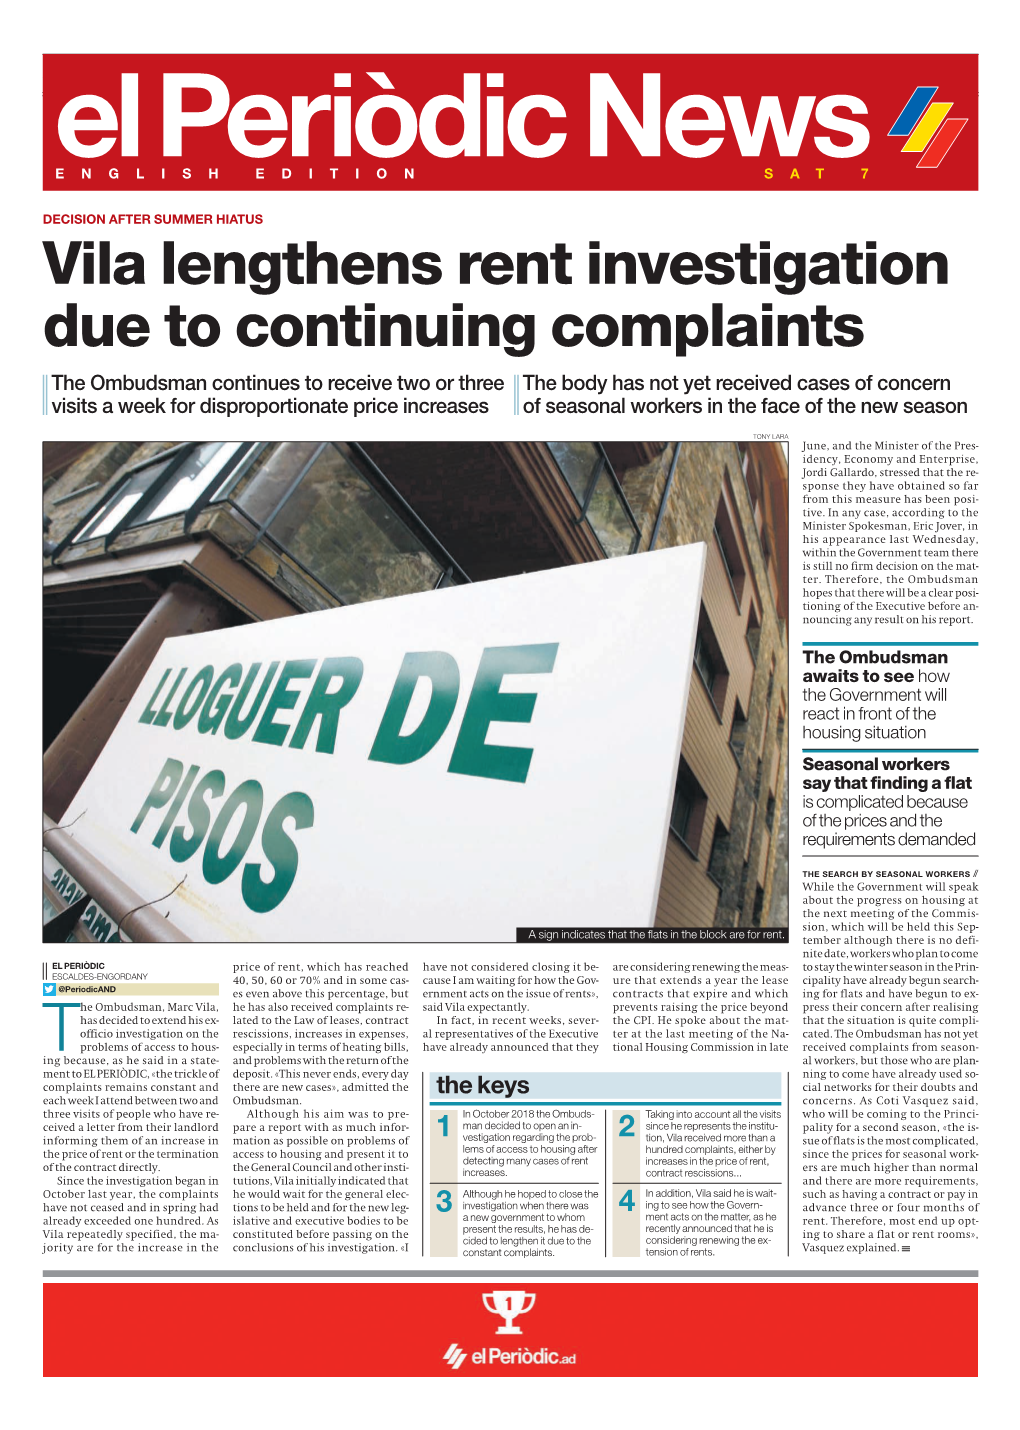 Vila Lengthens Rent Investigation Due to Continuing Complaints